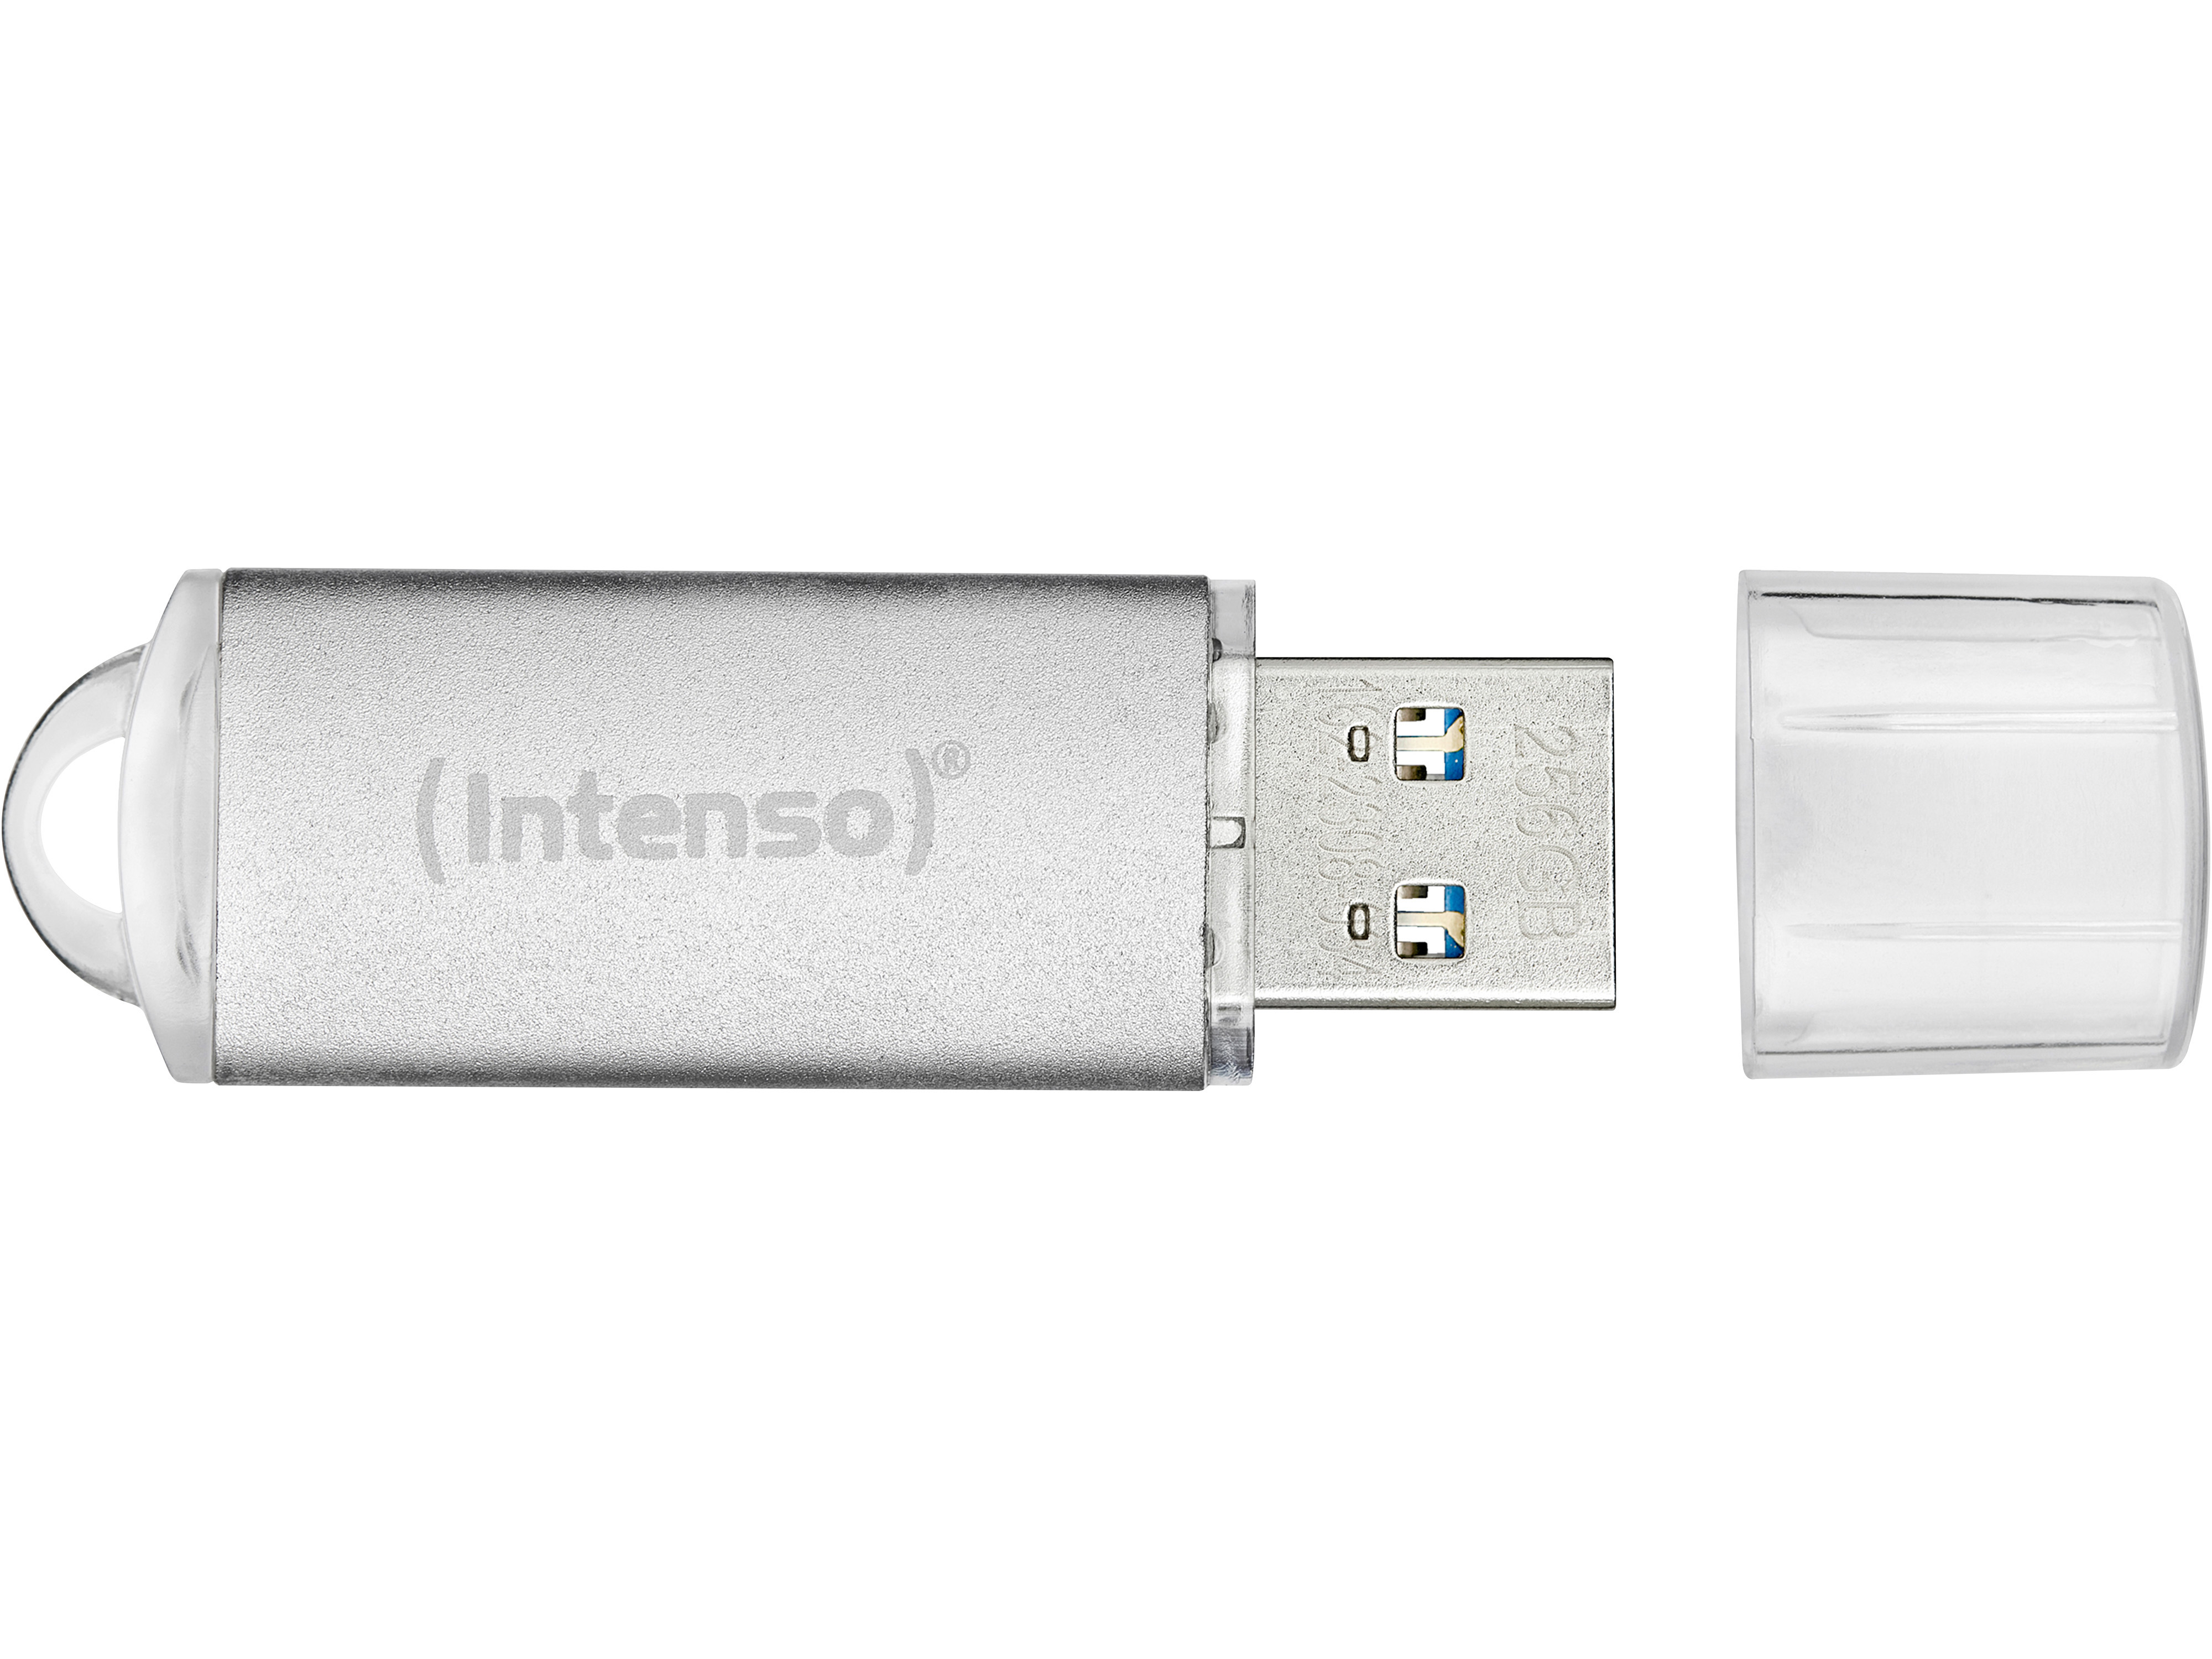 INTENSO USB-Stick Jet Line, USB-A, 128 GB